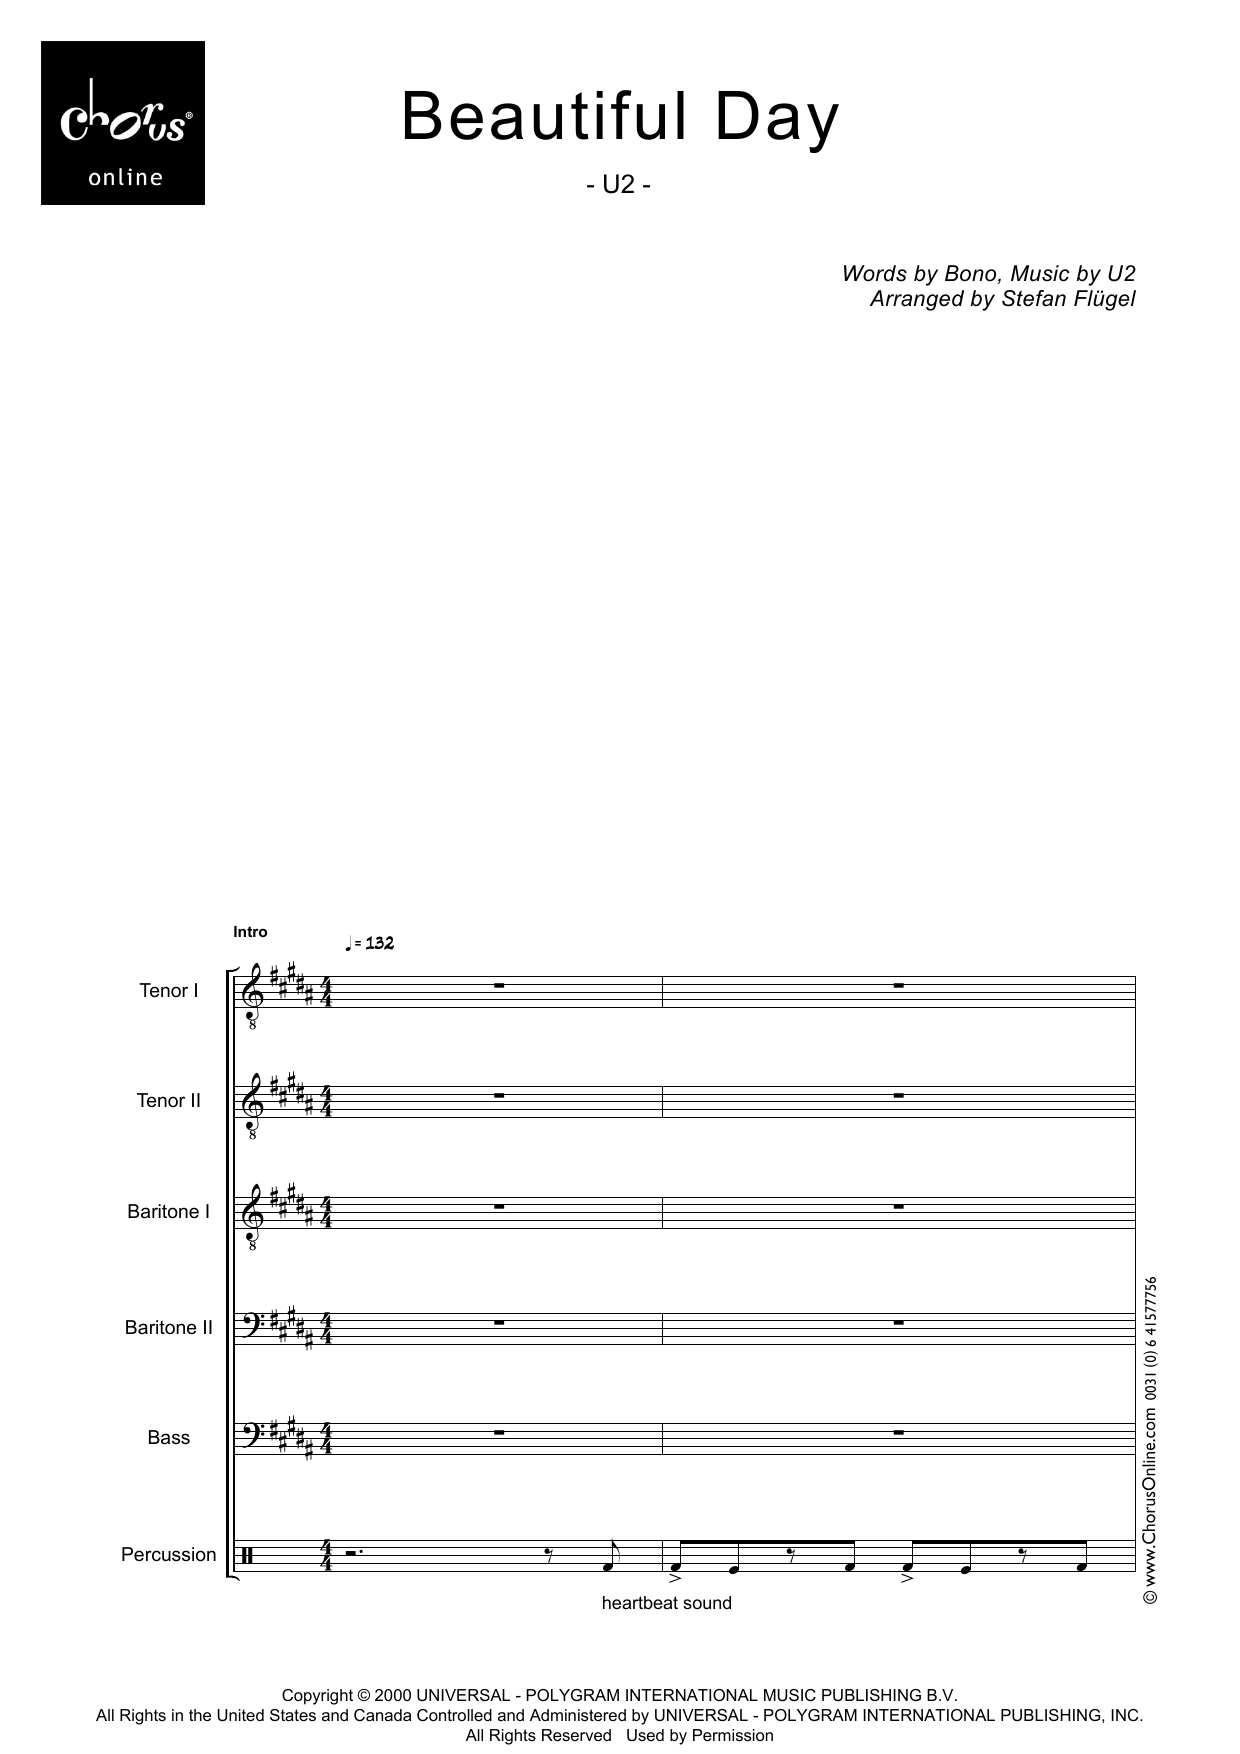 U2 Beautiful Day (arr. Stefan Flügel) sheet music notes printable PDF score